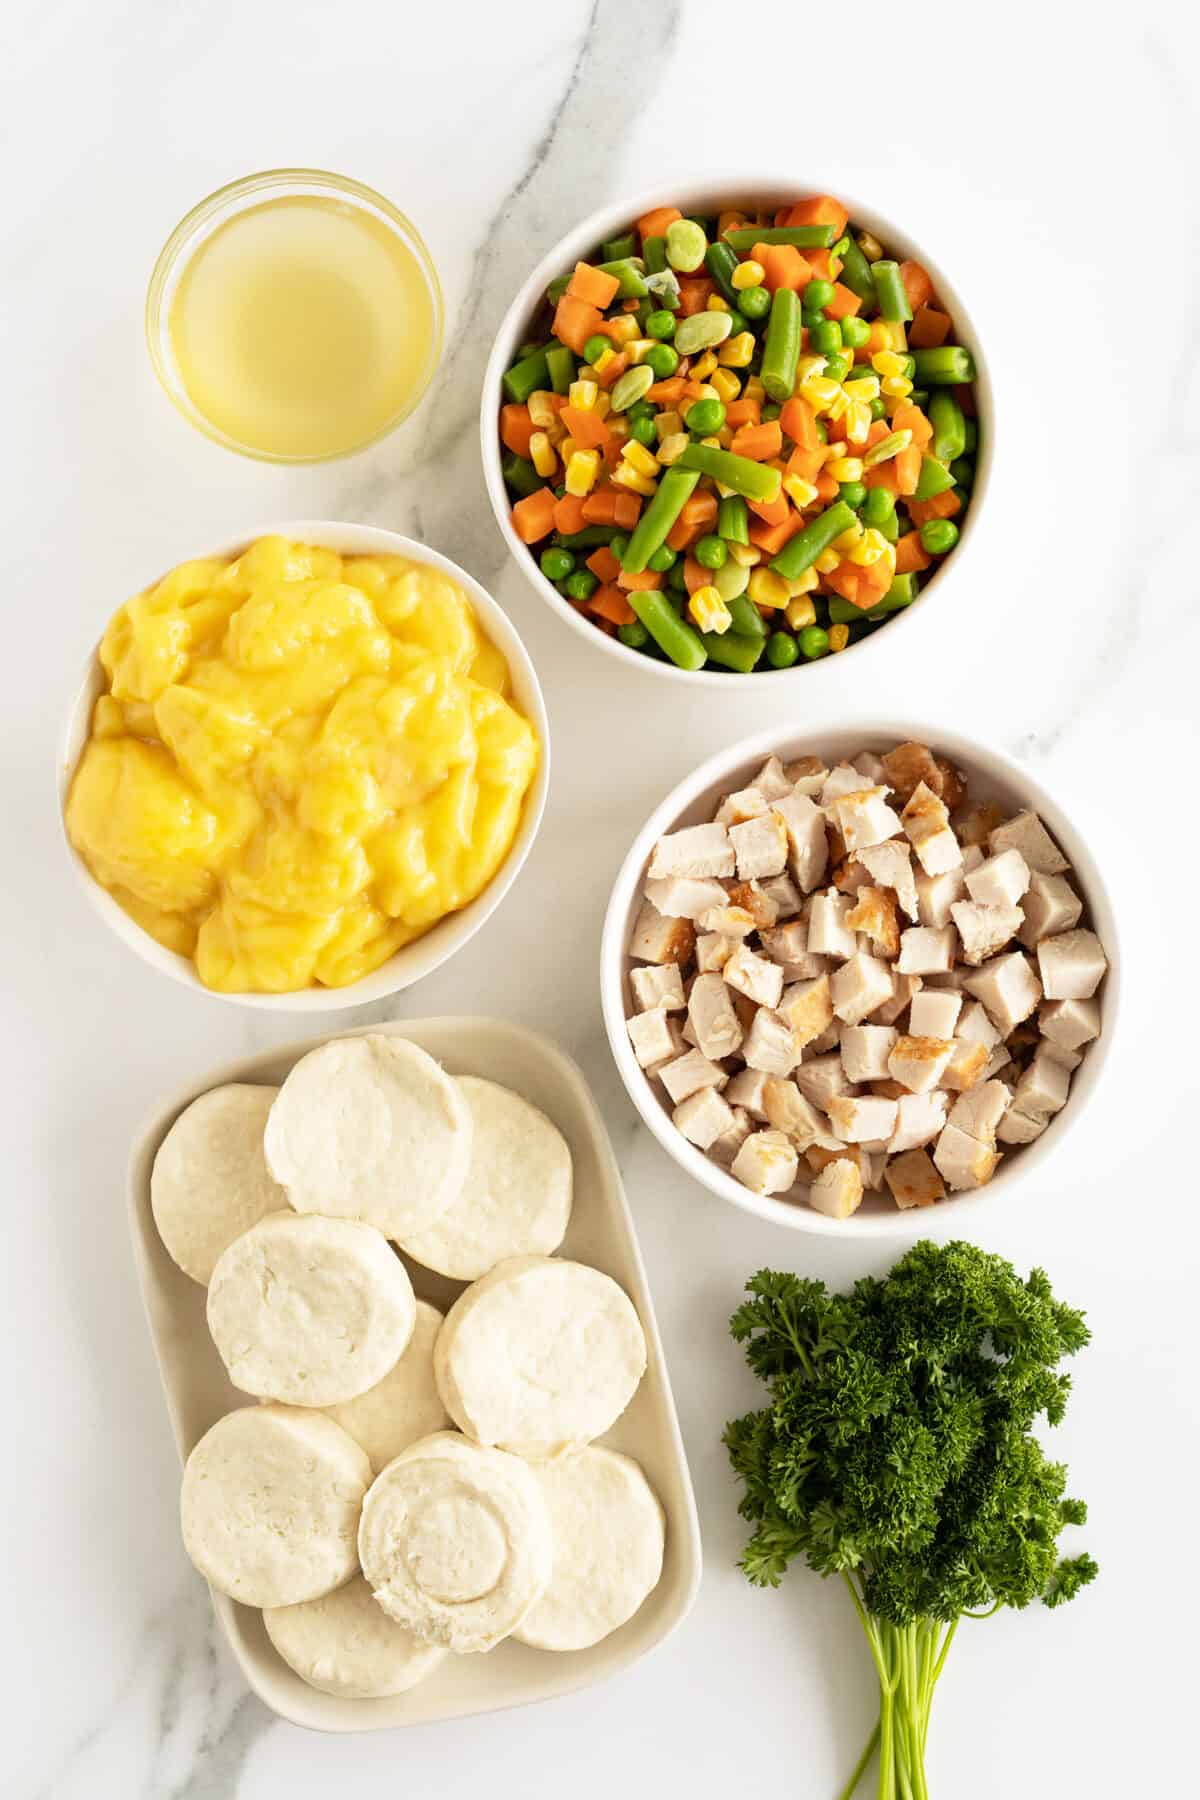 chicken pot pie casserole ingredients in medium white bowls